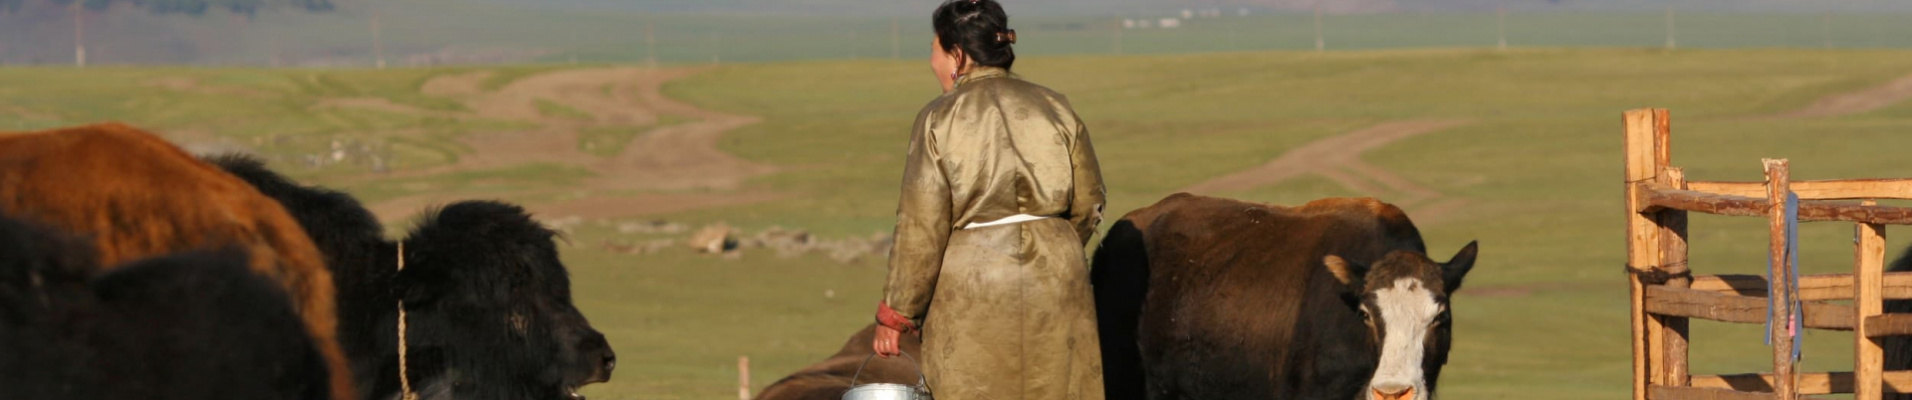 assurance-mongolie